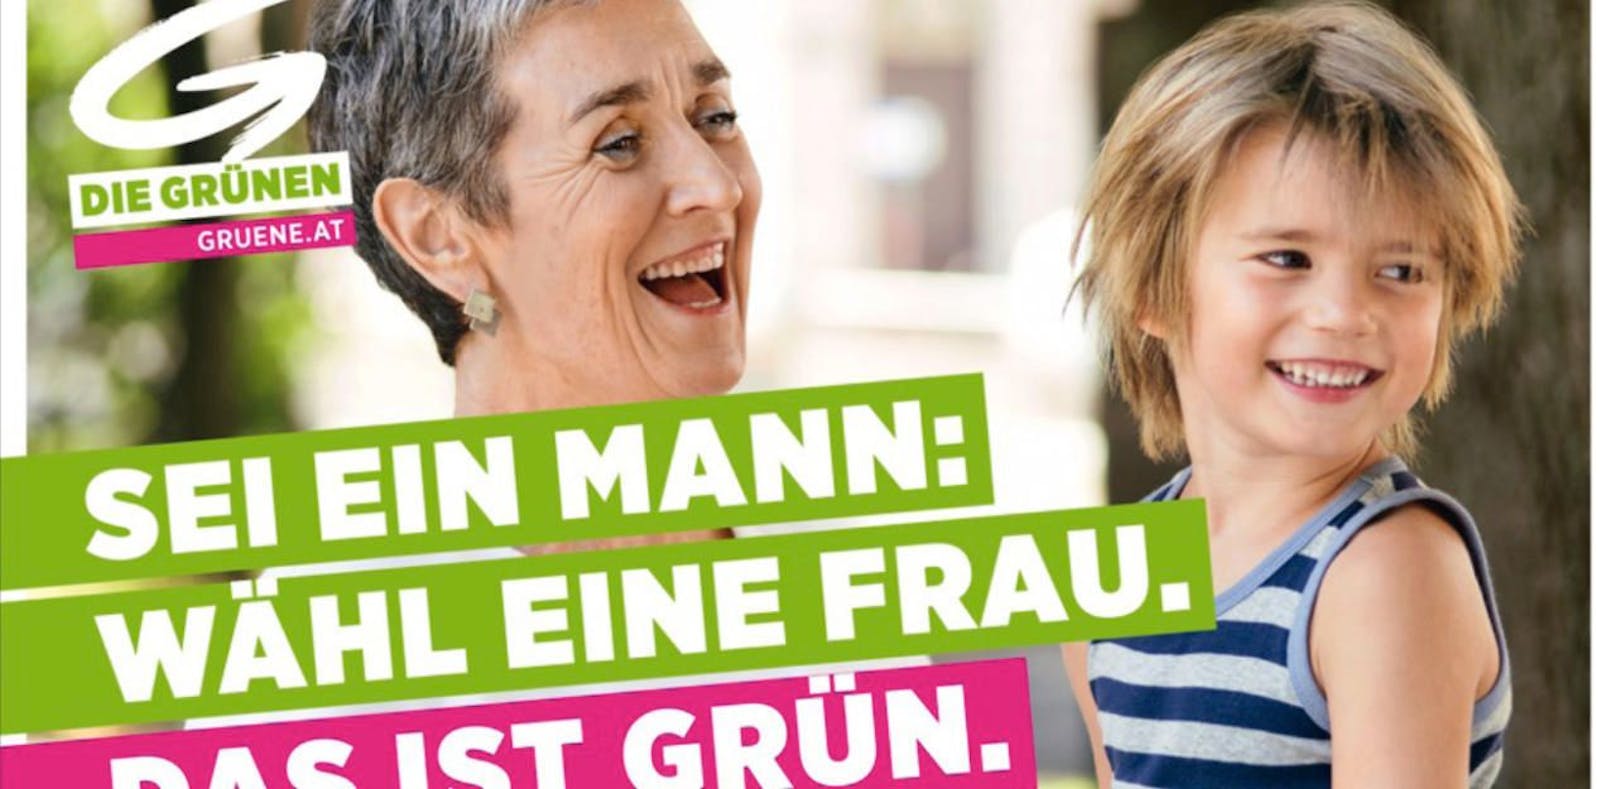 "Das ist Grün.": Erste Plakatwelle der Grünen